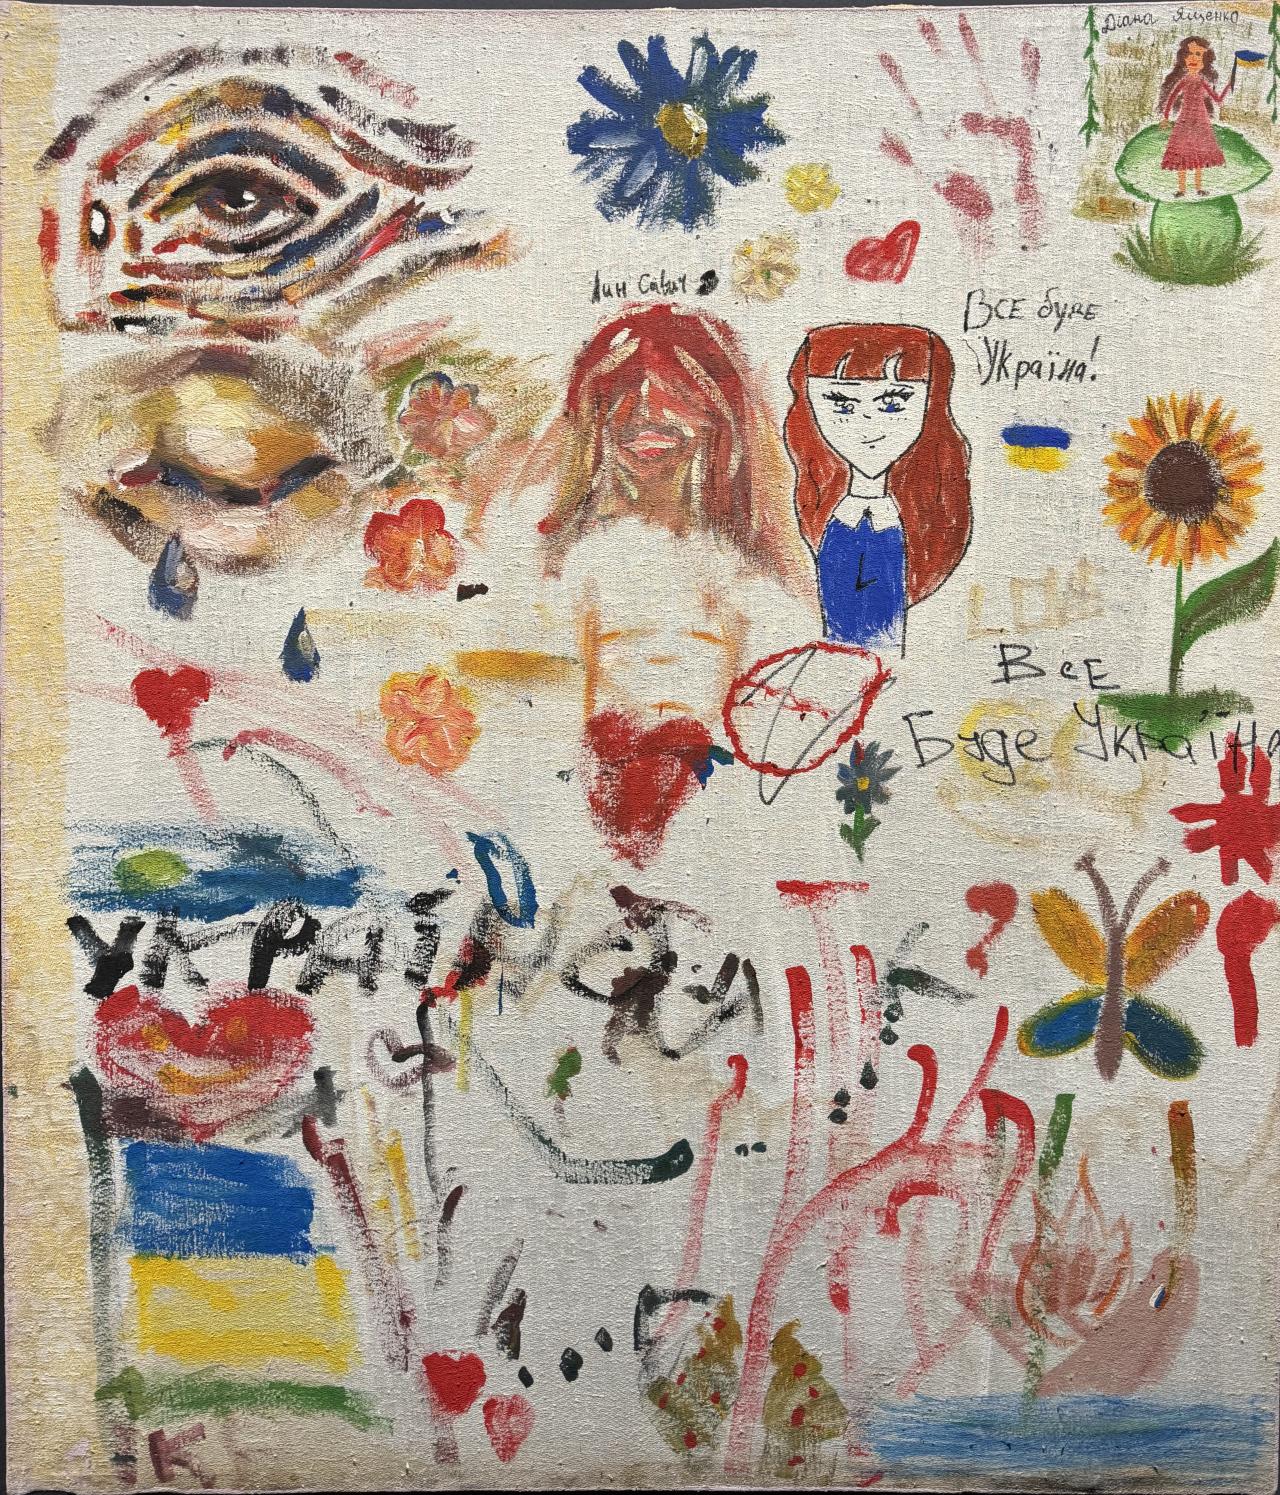 Auf diesem Gemälde sind viele kleine Dinge abgebildet. In der linken Ecke ist ein Auge zu sehen, einmal in offenen, einmal ein geschlossenes. Zusätzlich wurden Blumen und herzen und ein Mädchen gemalt. Das ganze Bild ist bunt.